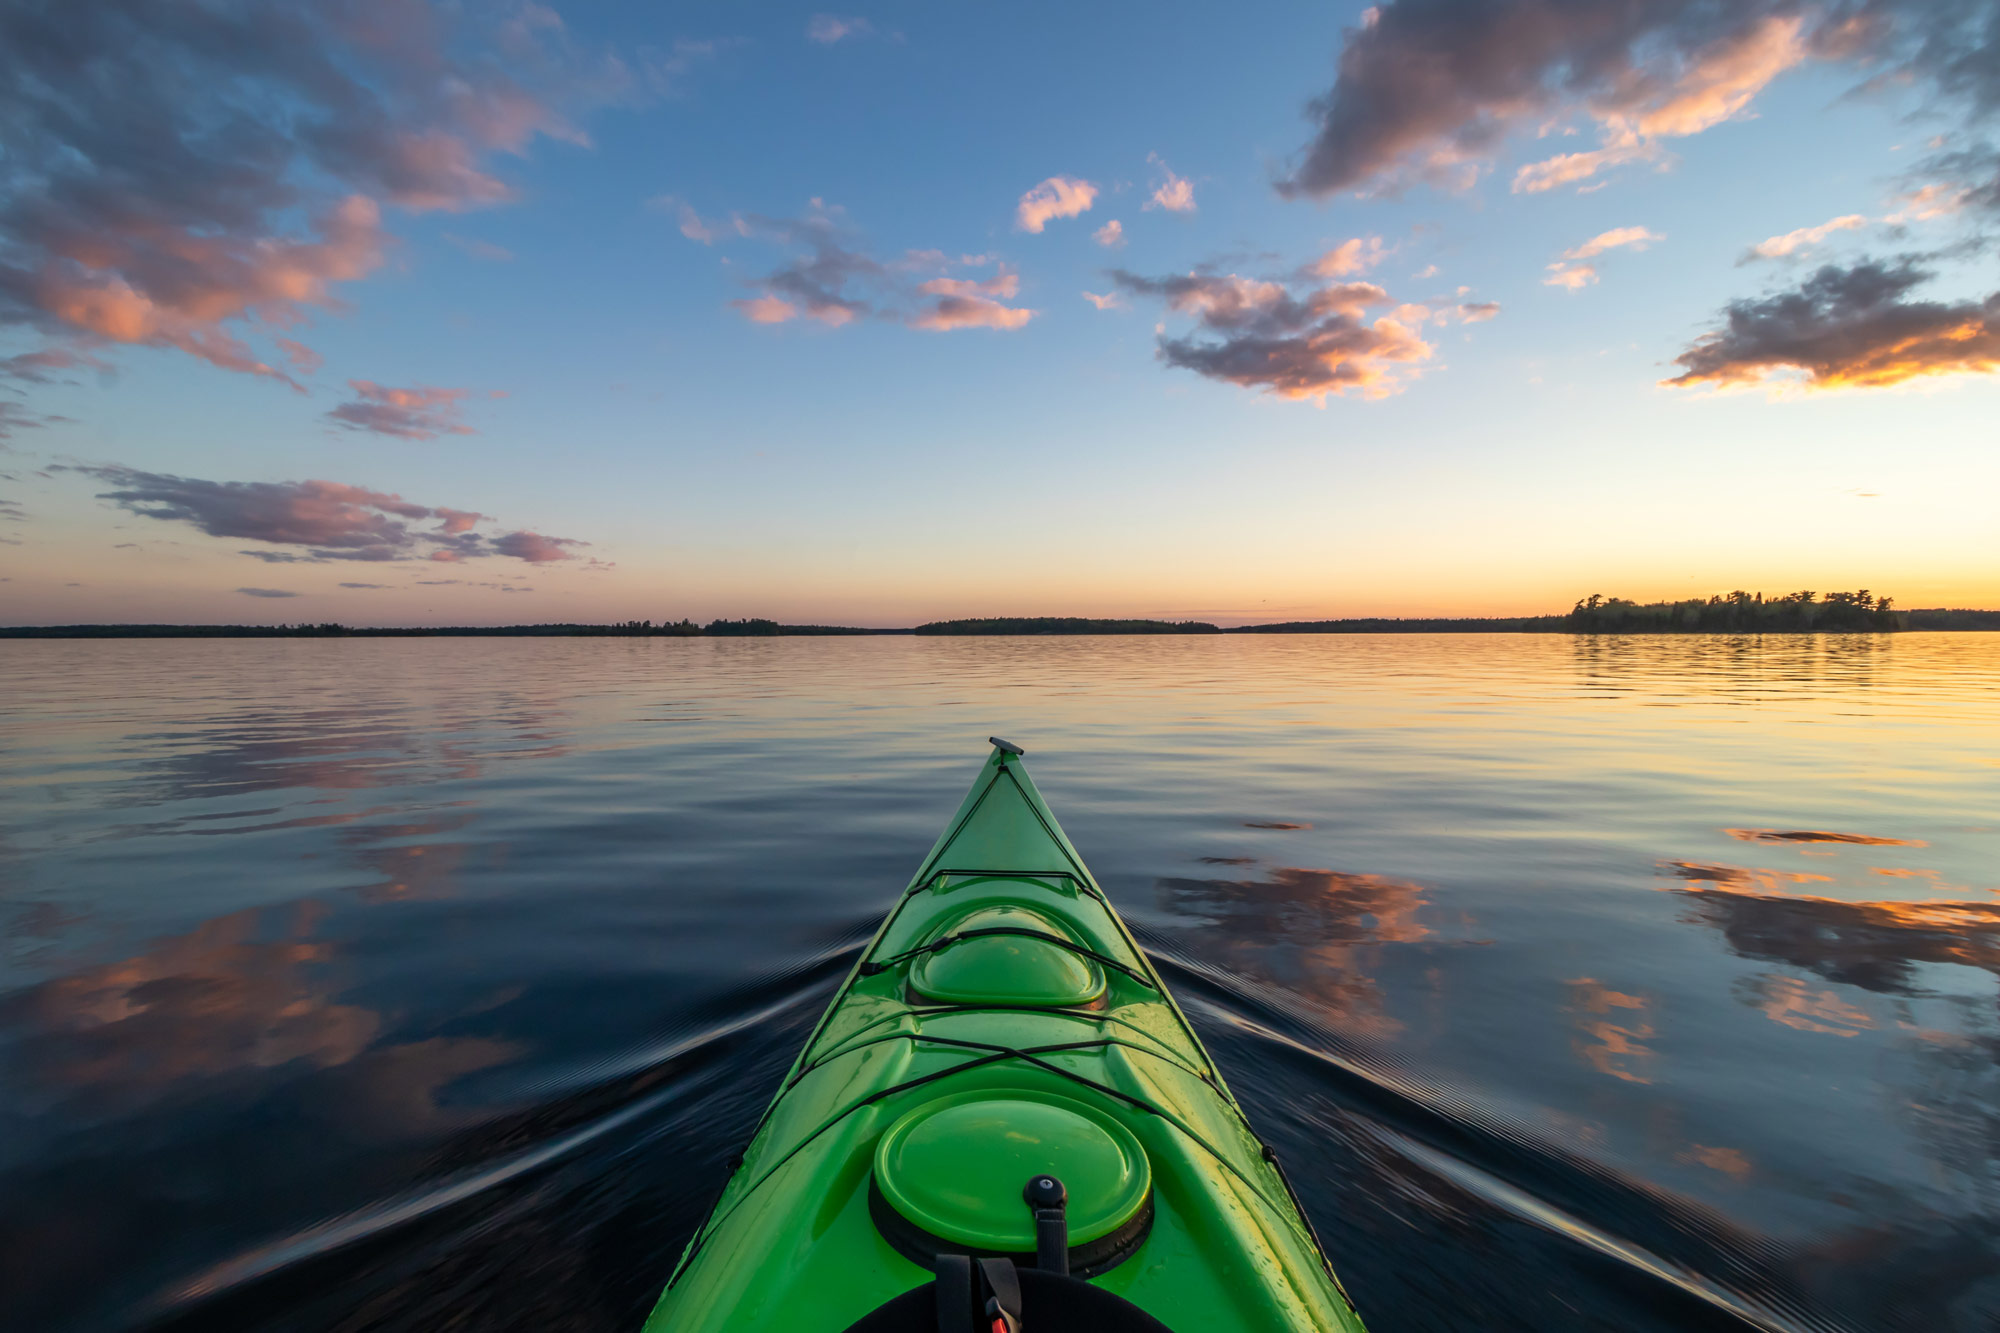 Green kayak on a lake at sunset